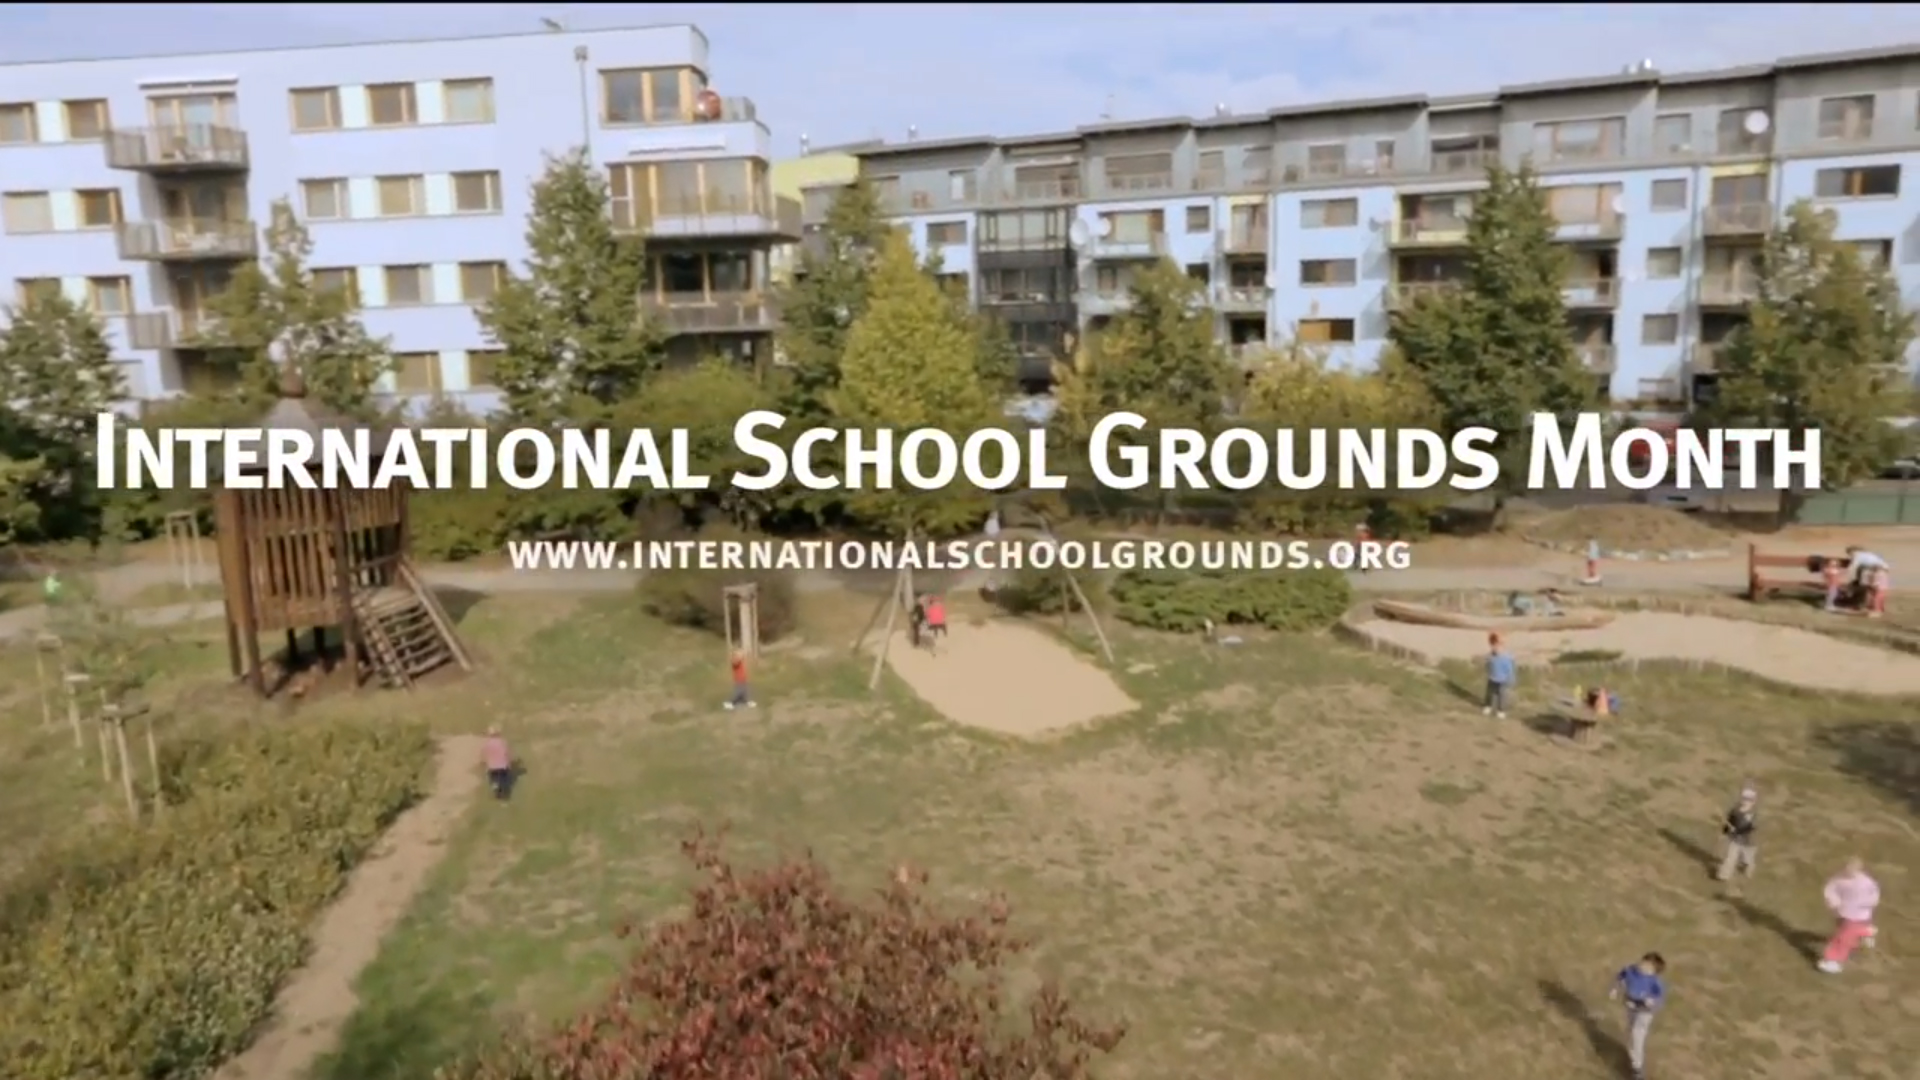 Vista aérea de um pátio escolar gramado e arborizado com crianças brincando, ao fundo alguns prédios. Sobre a imagem está escrito em branco 